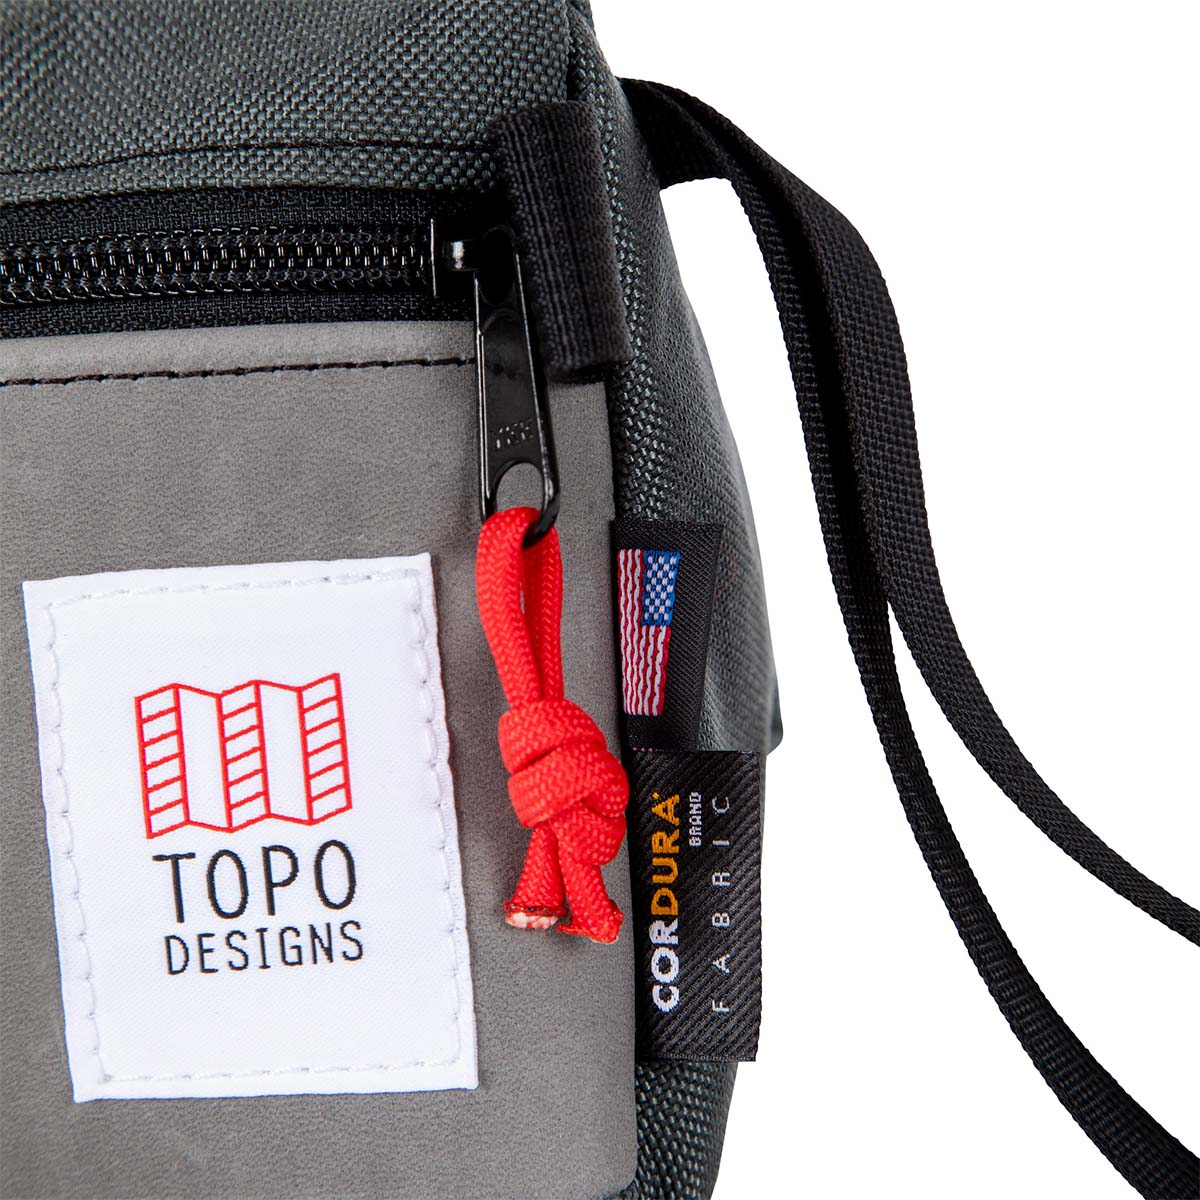 Topo Designs Dopp Kit Charcoal/Charcoal Leather, toilettas speciaal ontworpen voor minimalistisch reizen